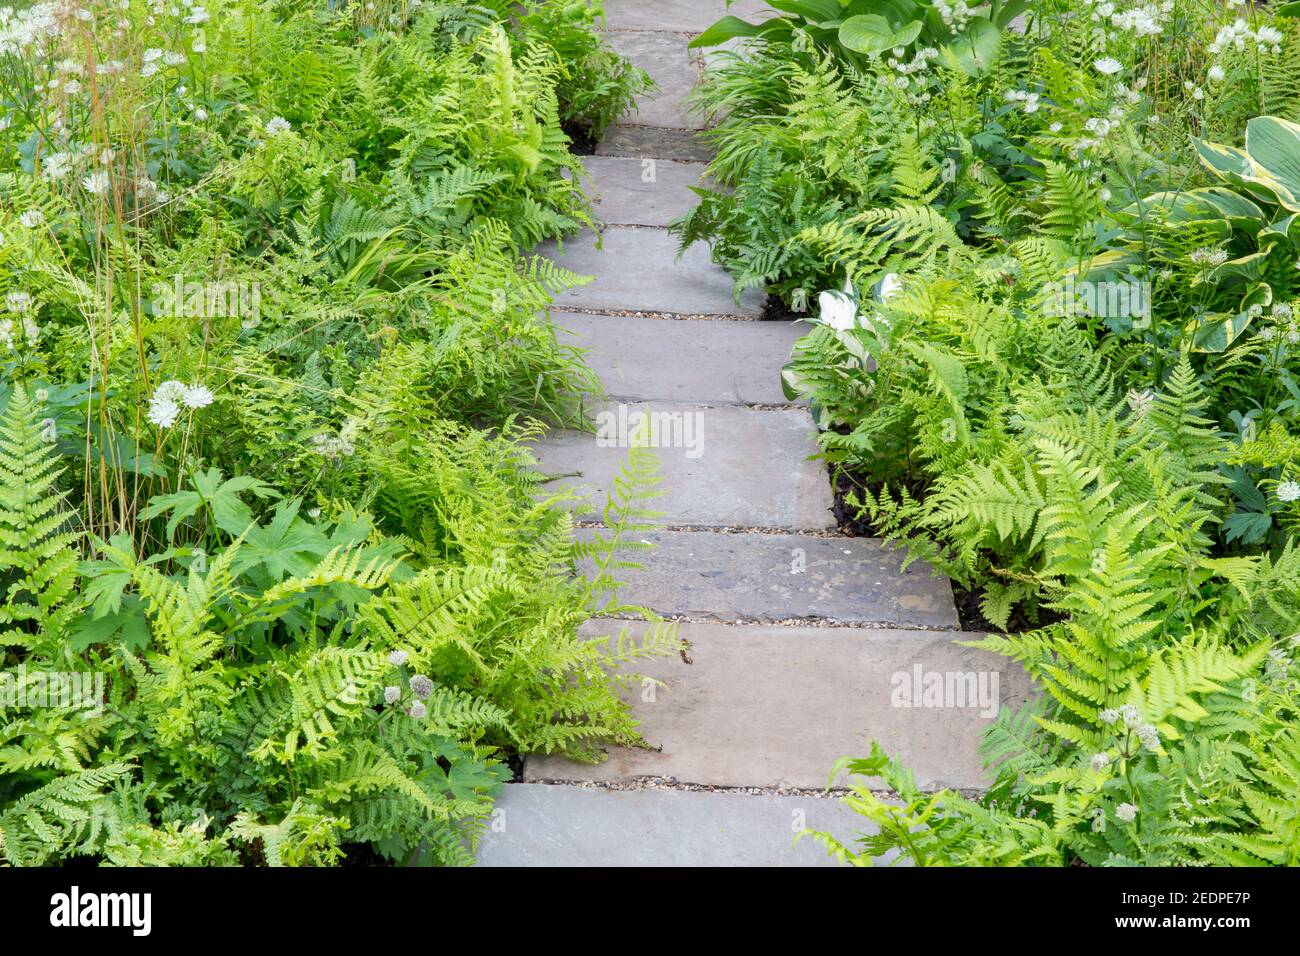 Ein englischer schattiger Vorgarten Steinpflasterweg mit Pflanzen von Hosta und Farnen in einem grünen Pflanzschema Farben England GB UK Stockfoto